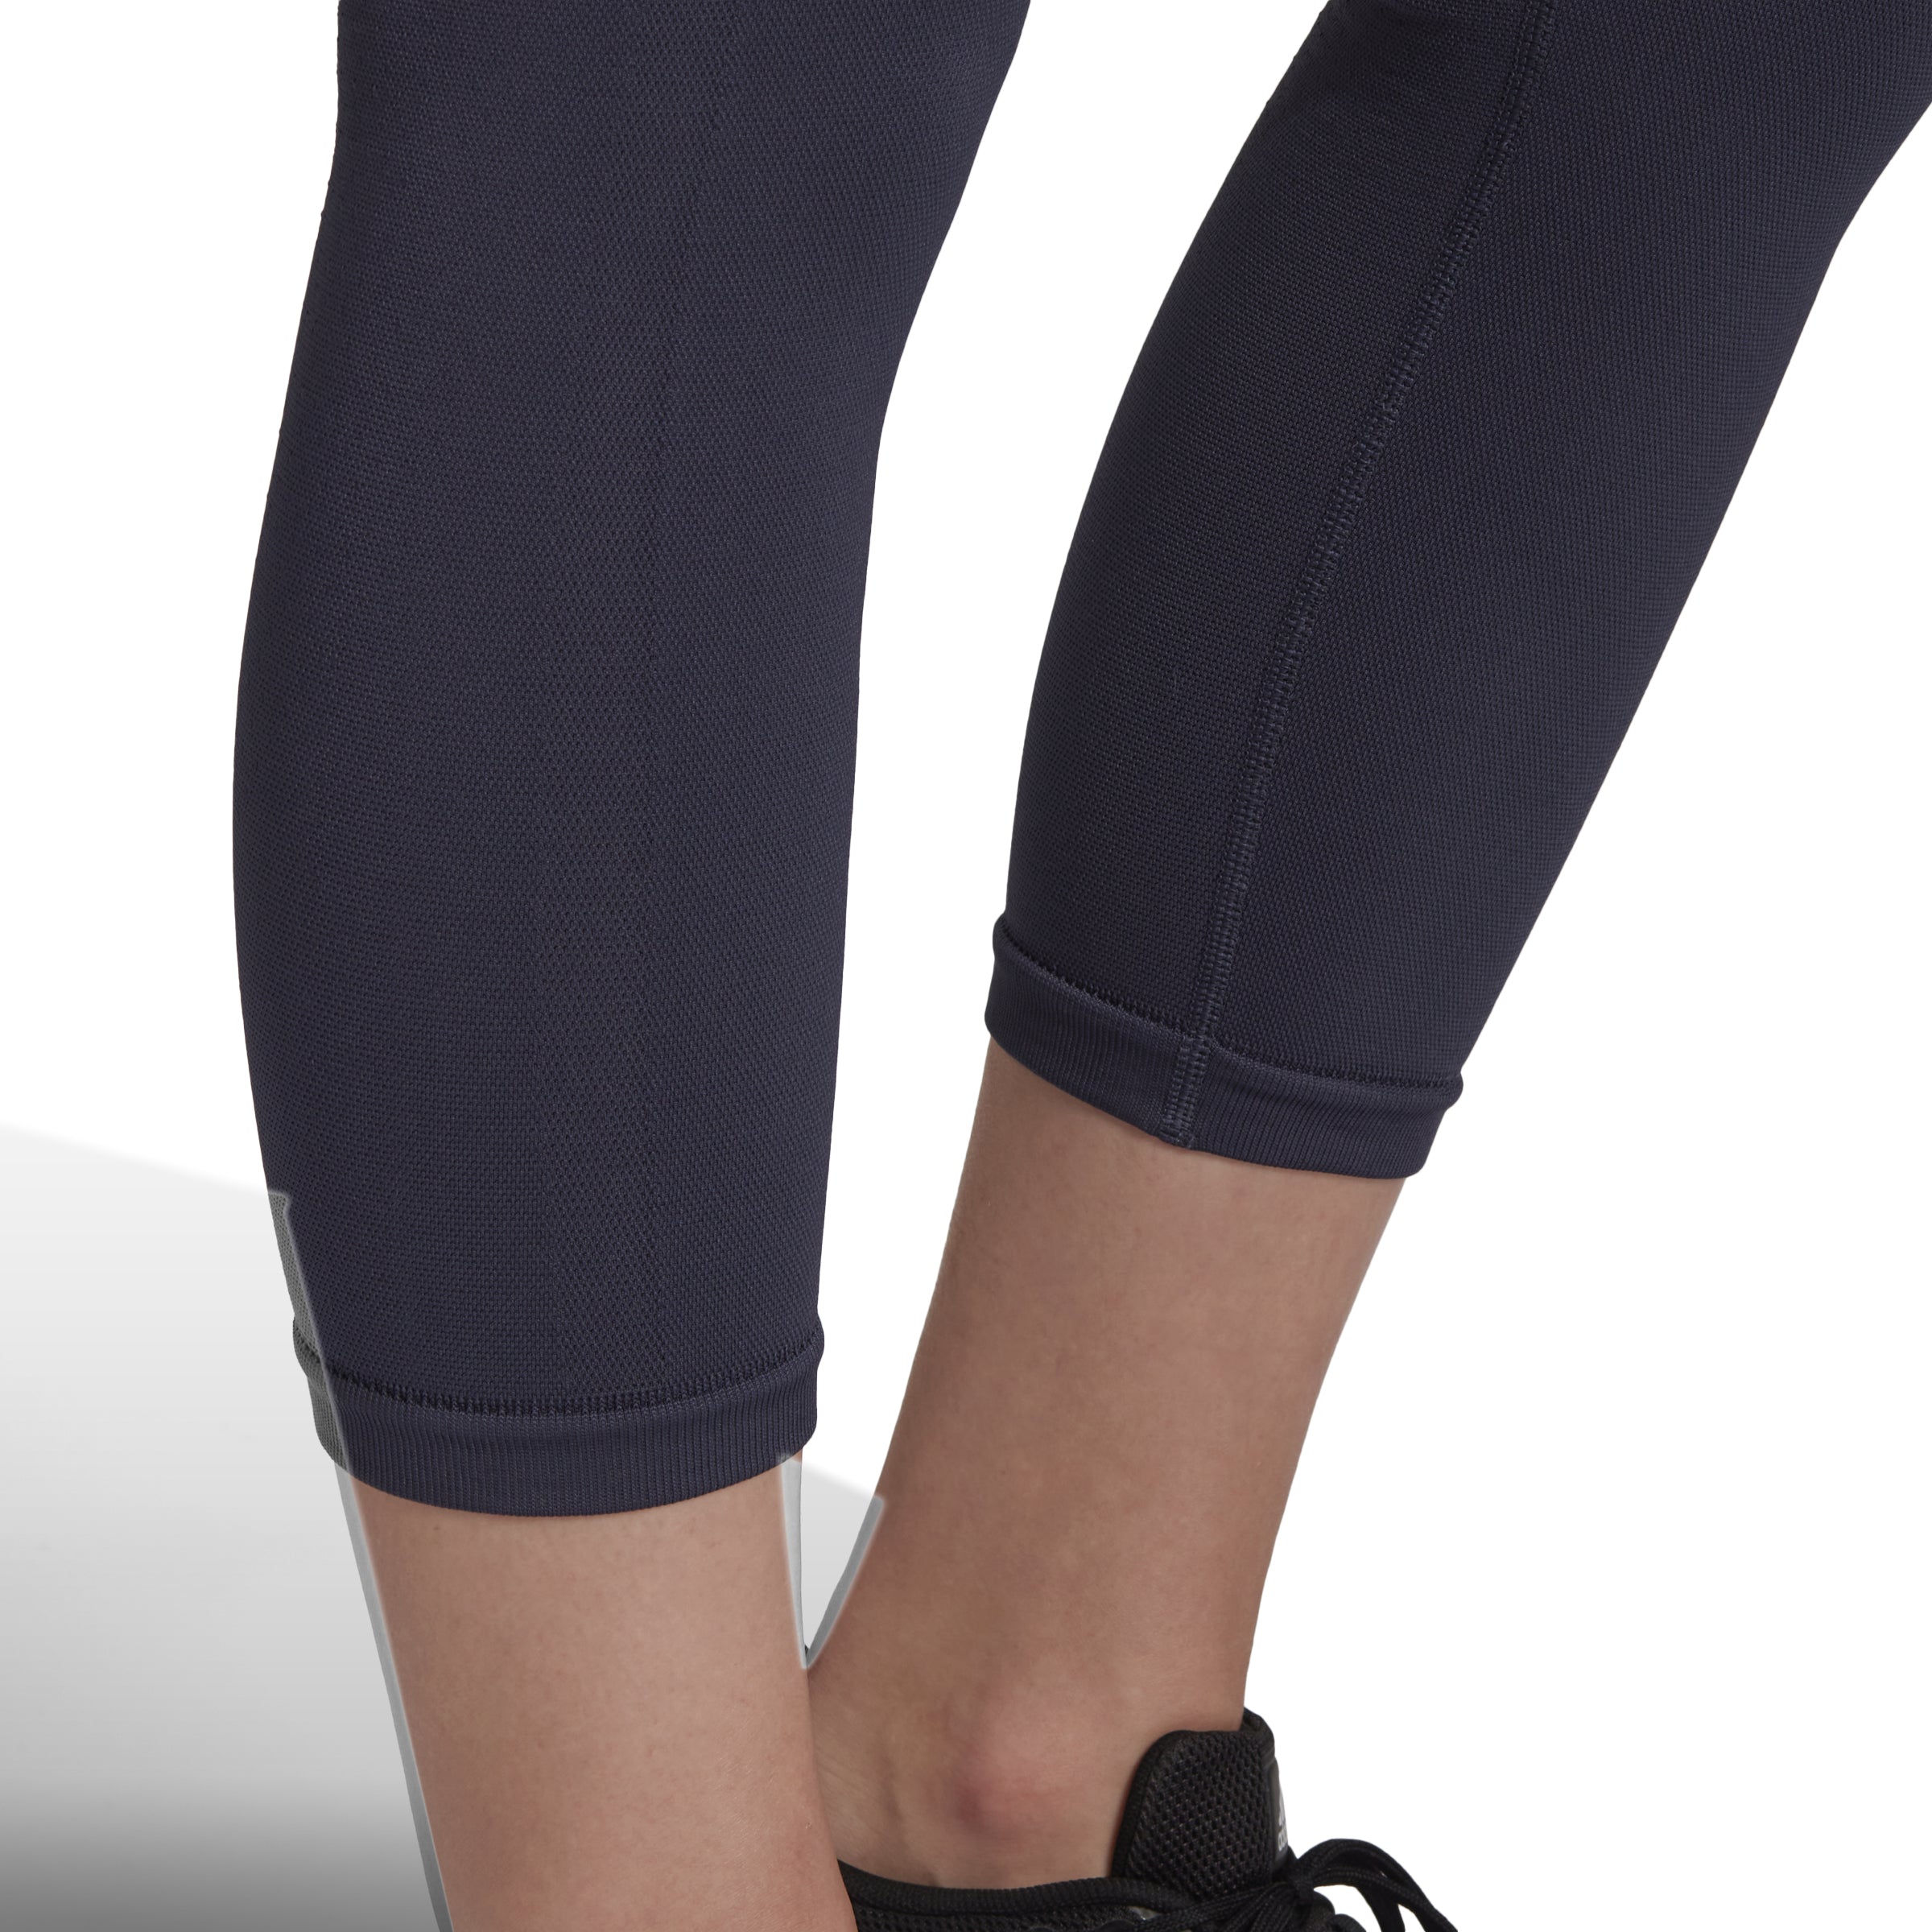 adidas Yoga Essentials 7/8 Leggings - Black | adidas Philippines